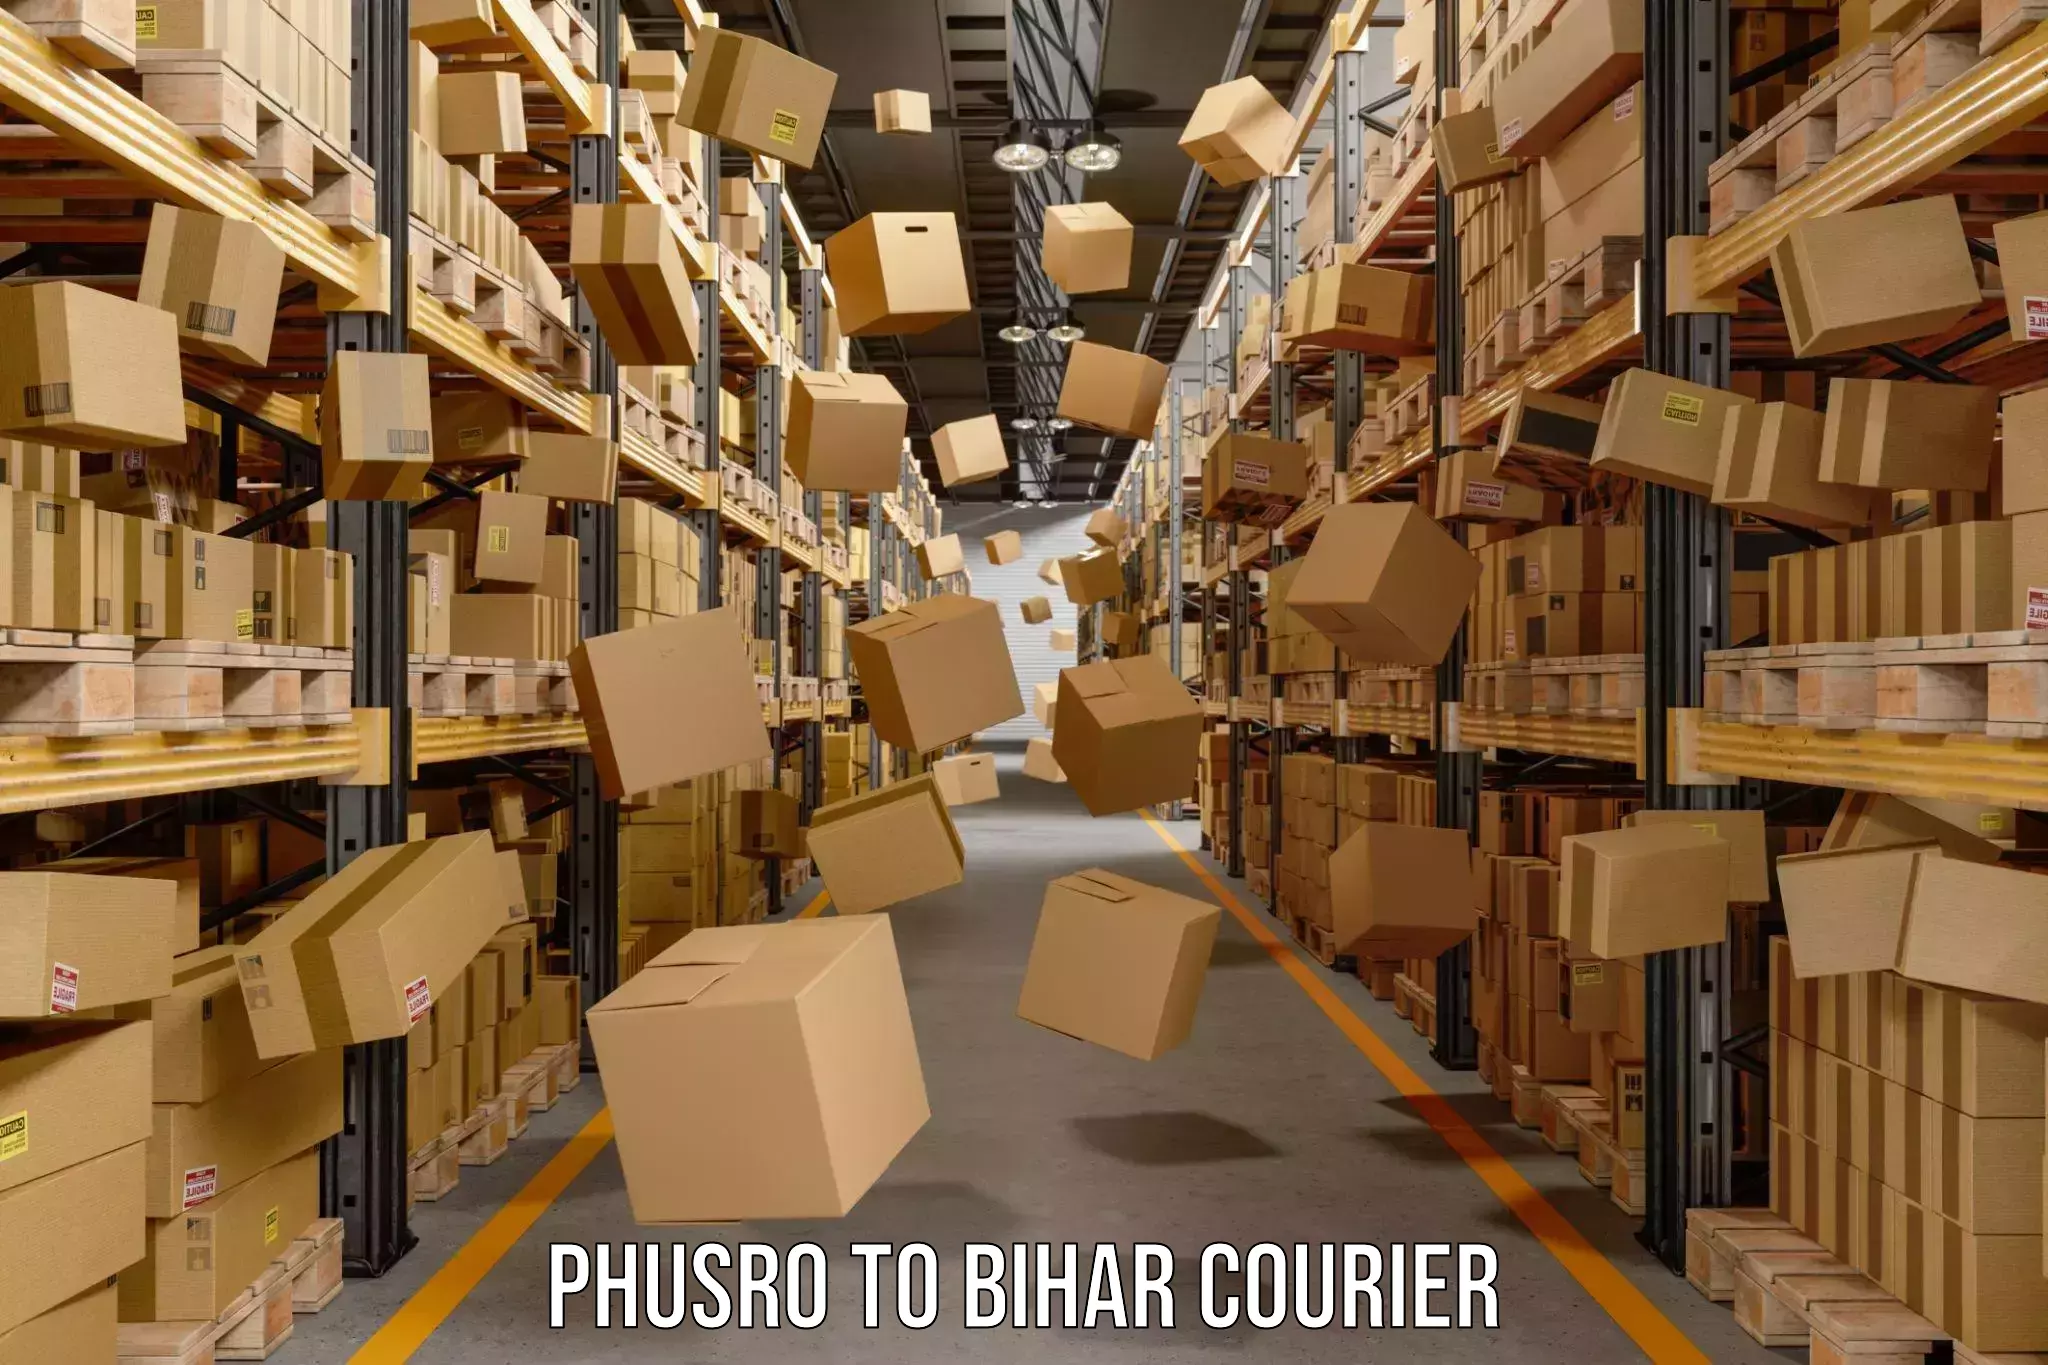 User-friendly delivery service Phusro to Mahnar Bazar